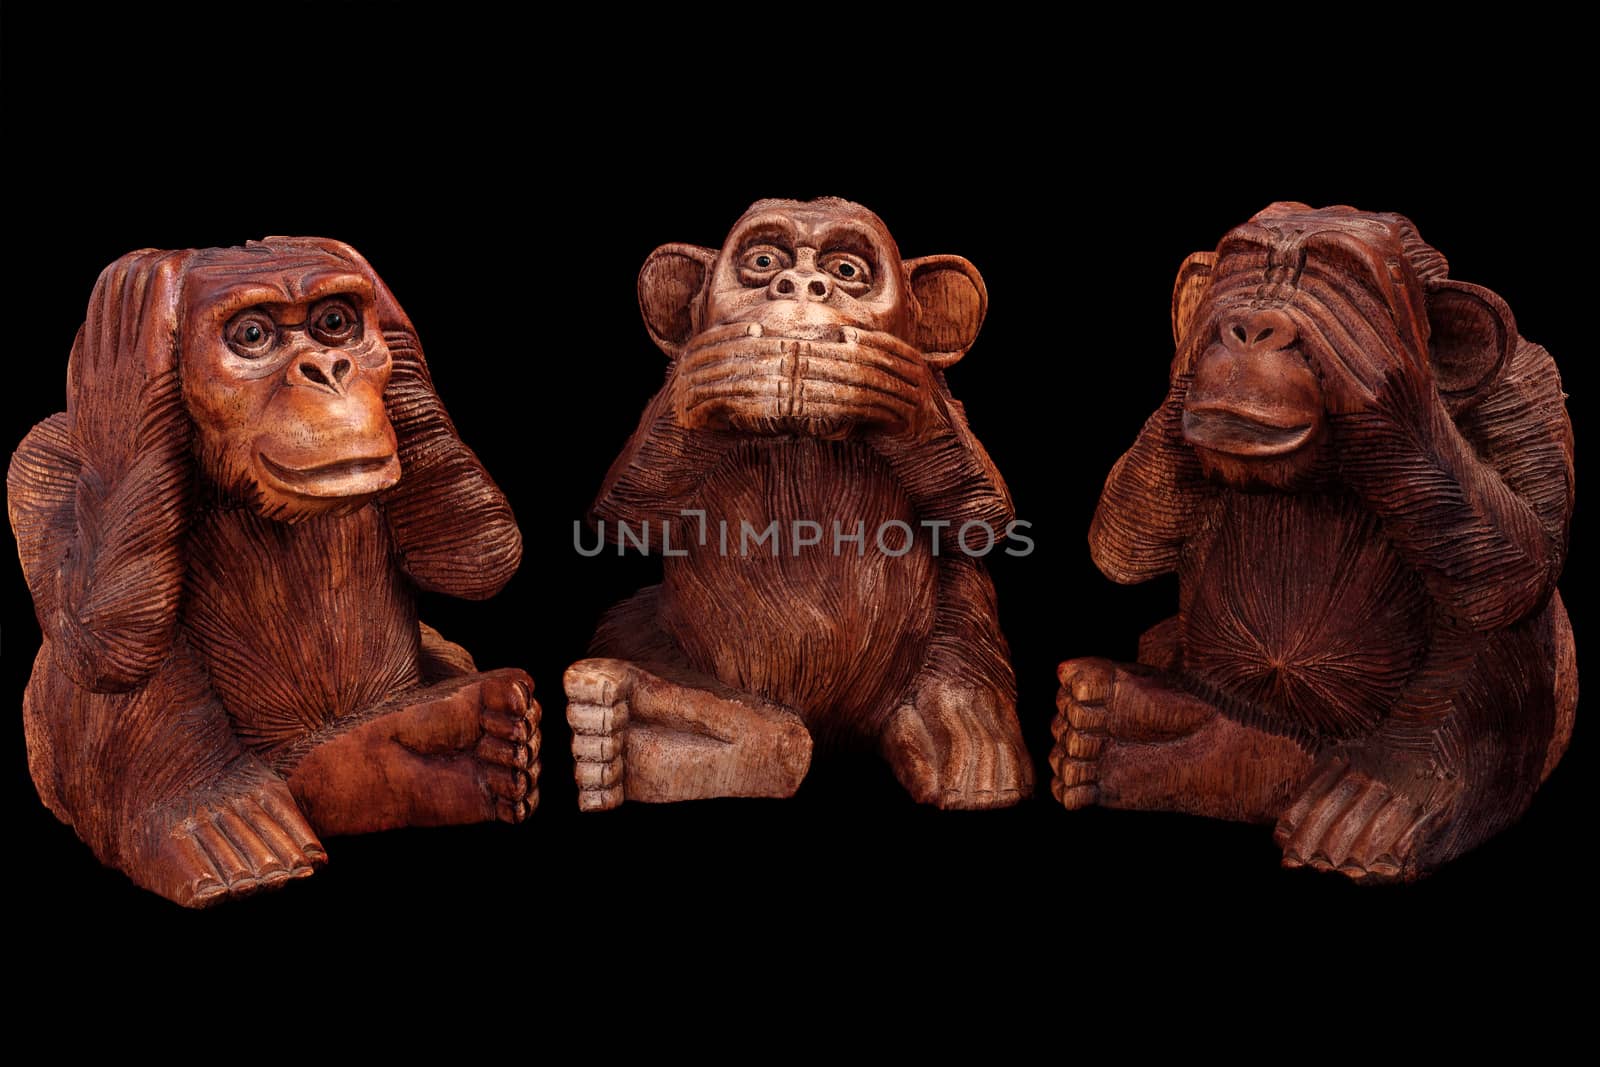 three wise monkeys by SergeyF